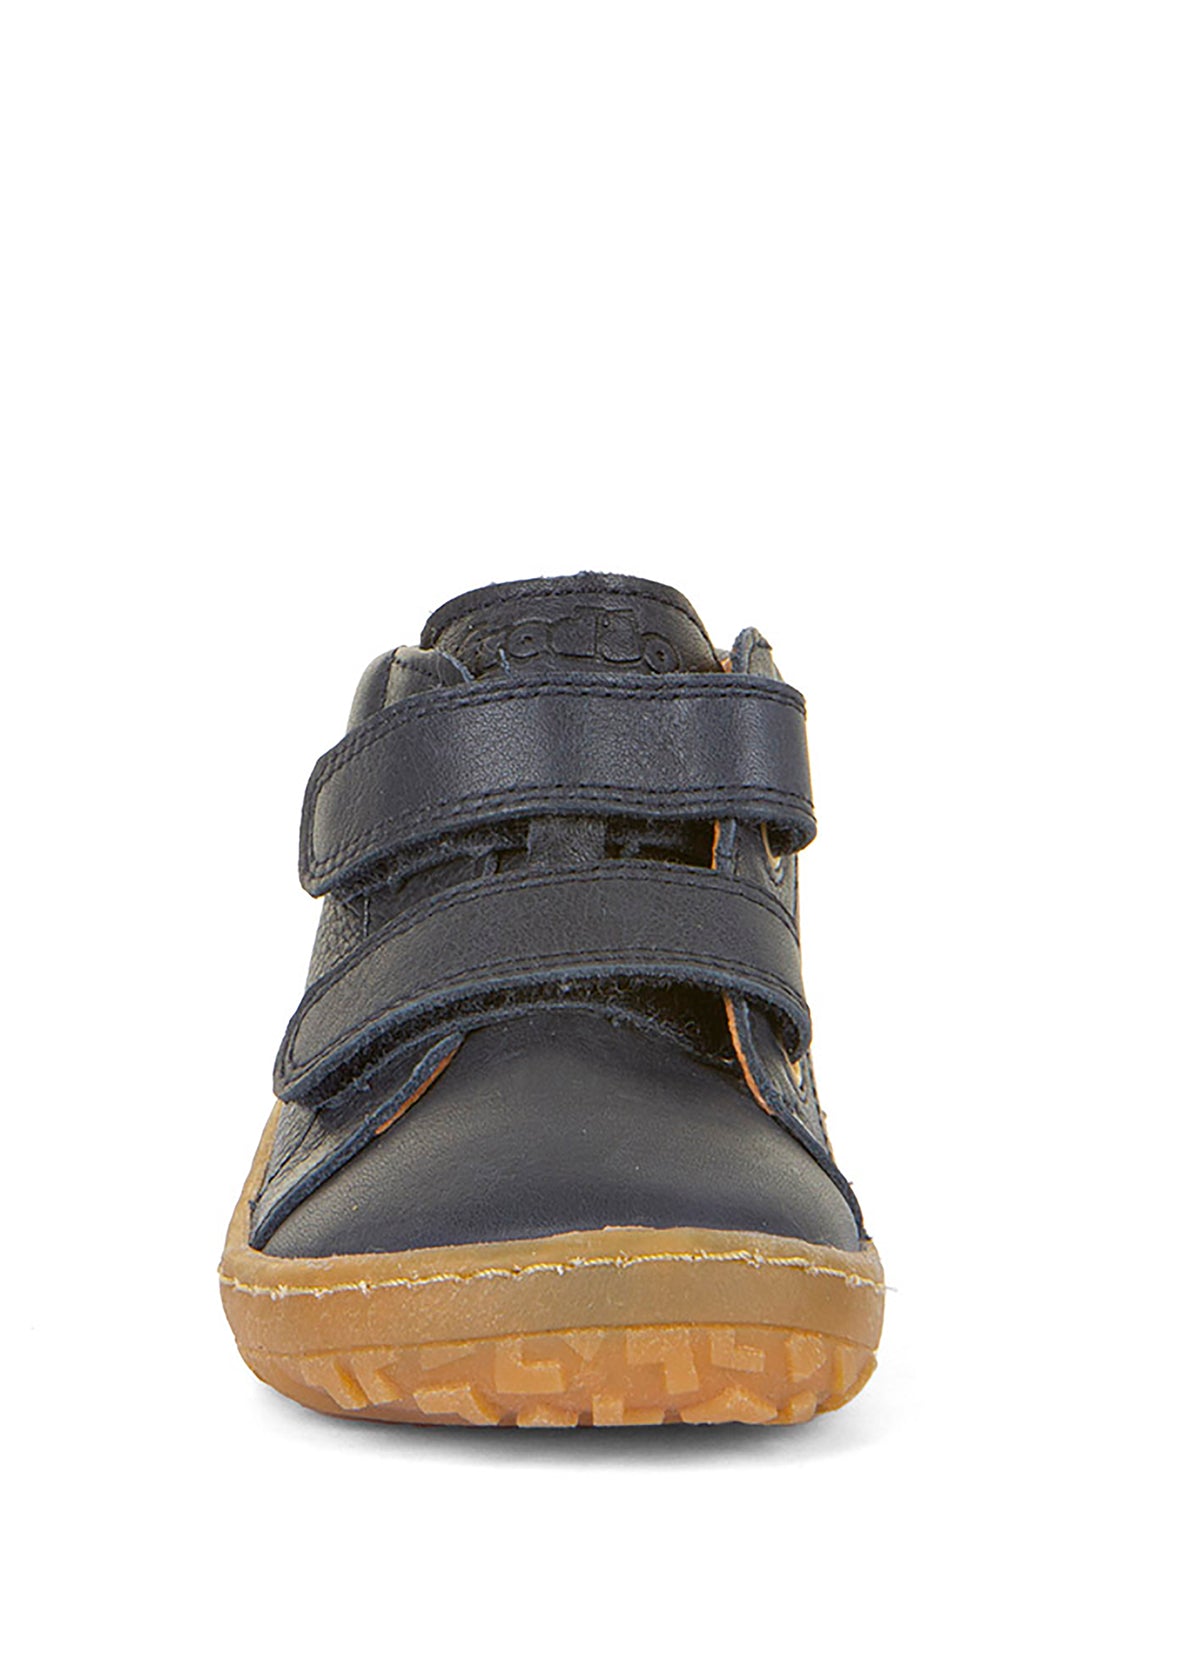 Barfotaskor för barn - mörkblått läder, Barefoot First Step